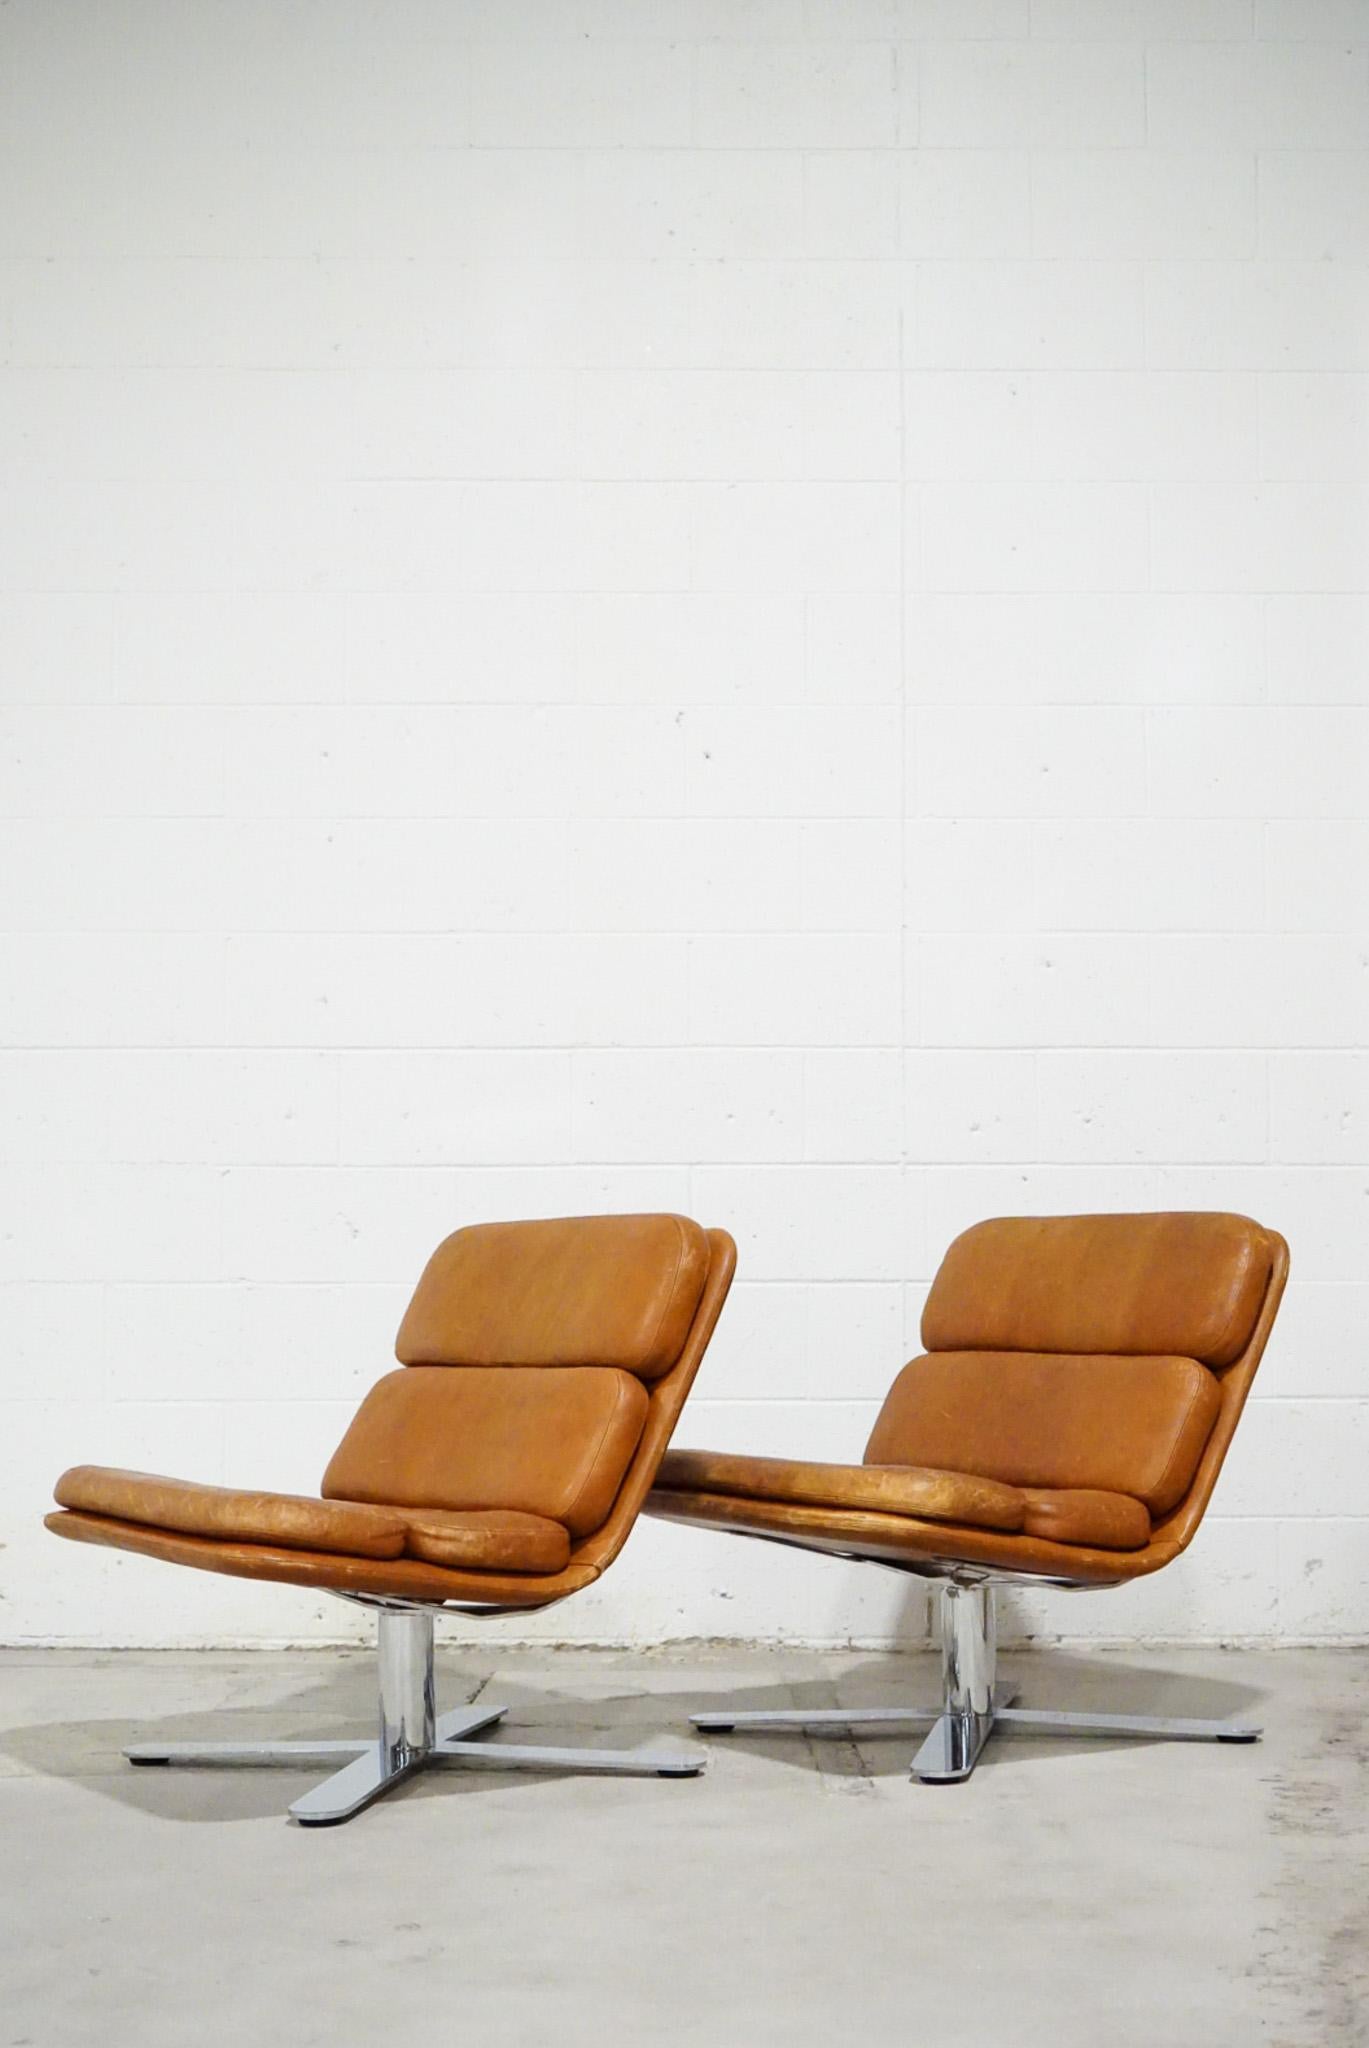 Une belle paire patinée de chaises de salon vintage en cuir et chrome conçues par John Follis, années 1970.
 
Elles sont connues sous le nom de chaises 